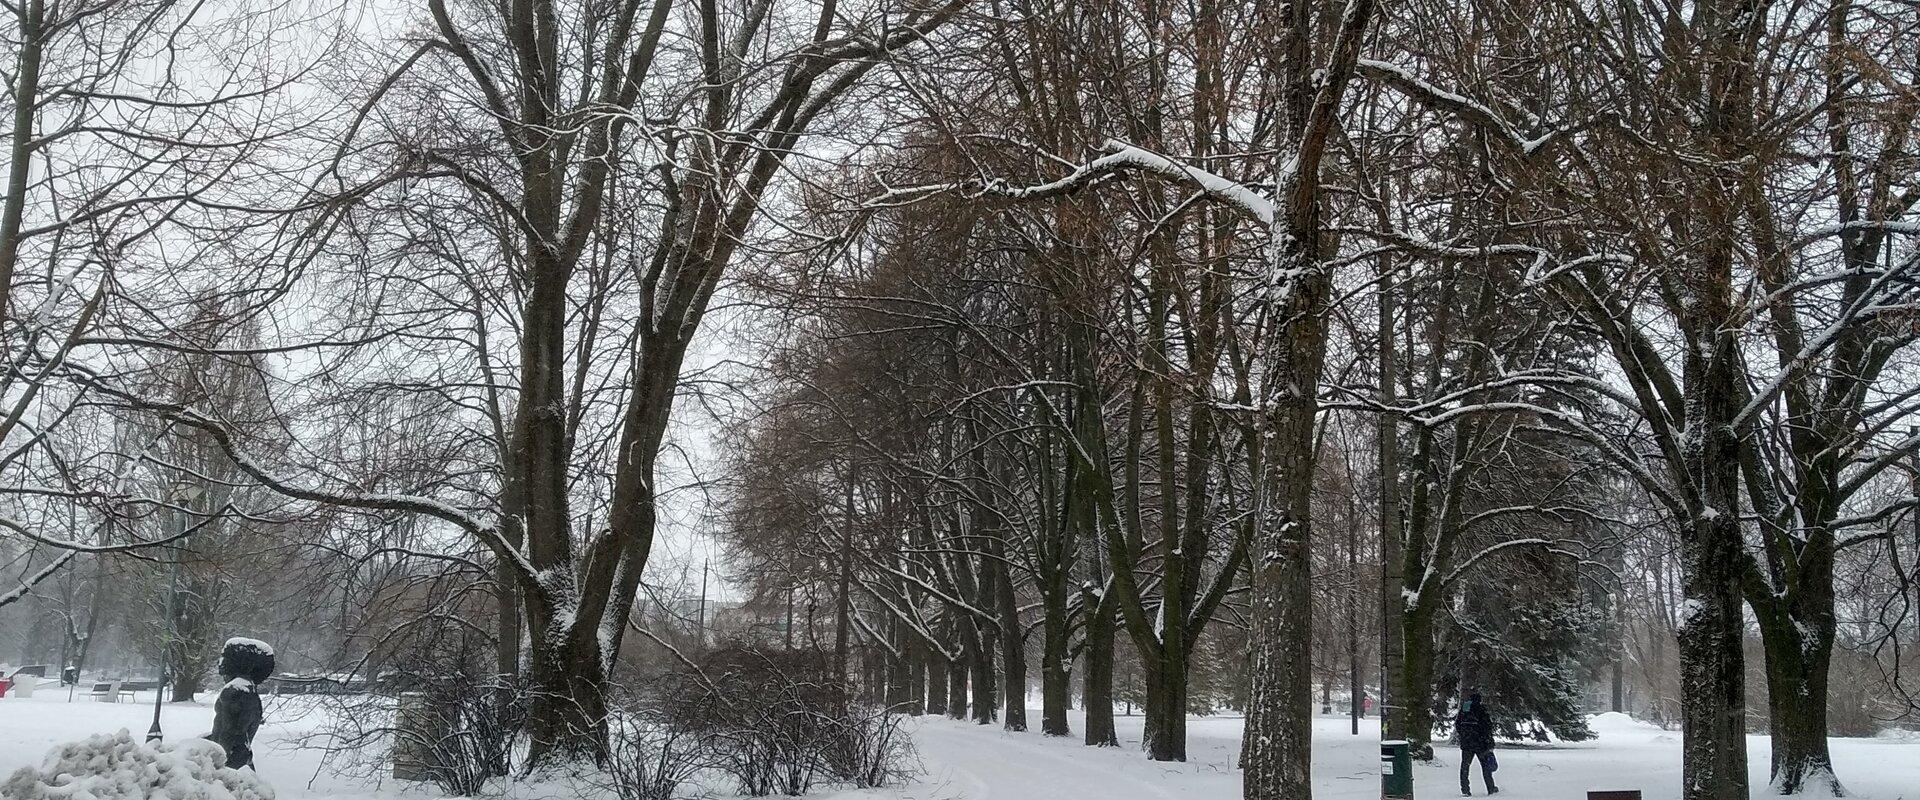 Winter's Tale - a walk in wintry Tartu